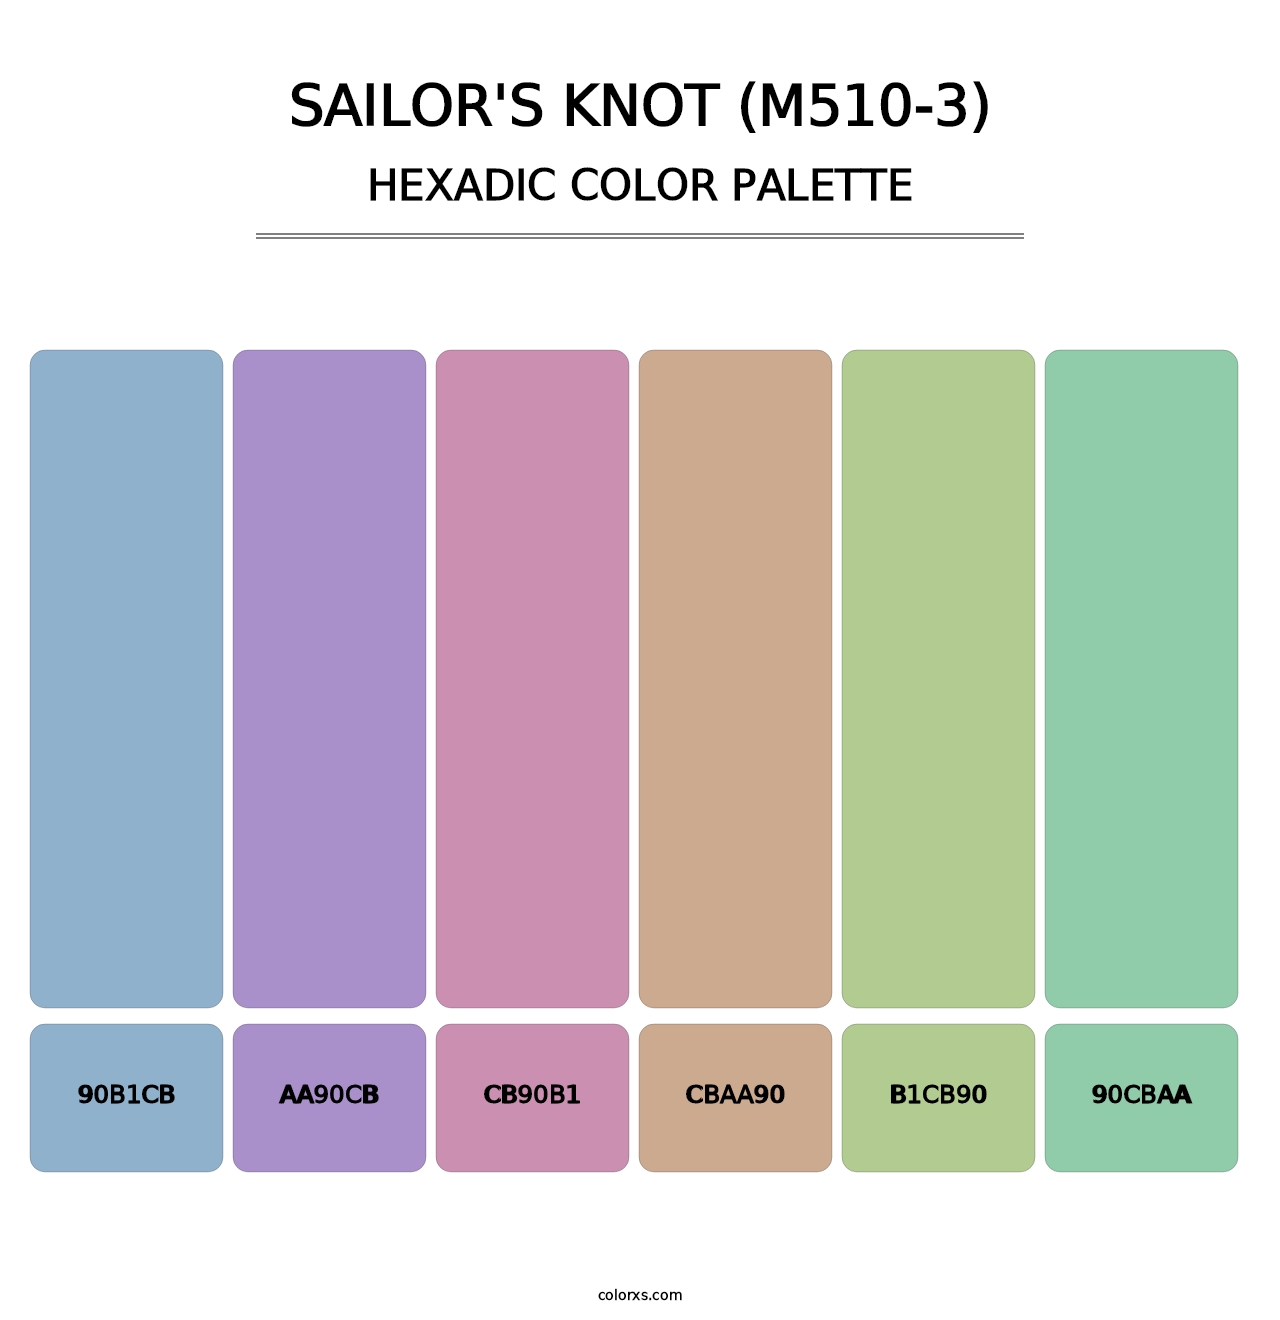 Sailor'S Knot (M510-3) - Hexadic Color Palette